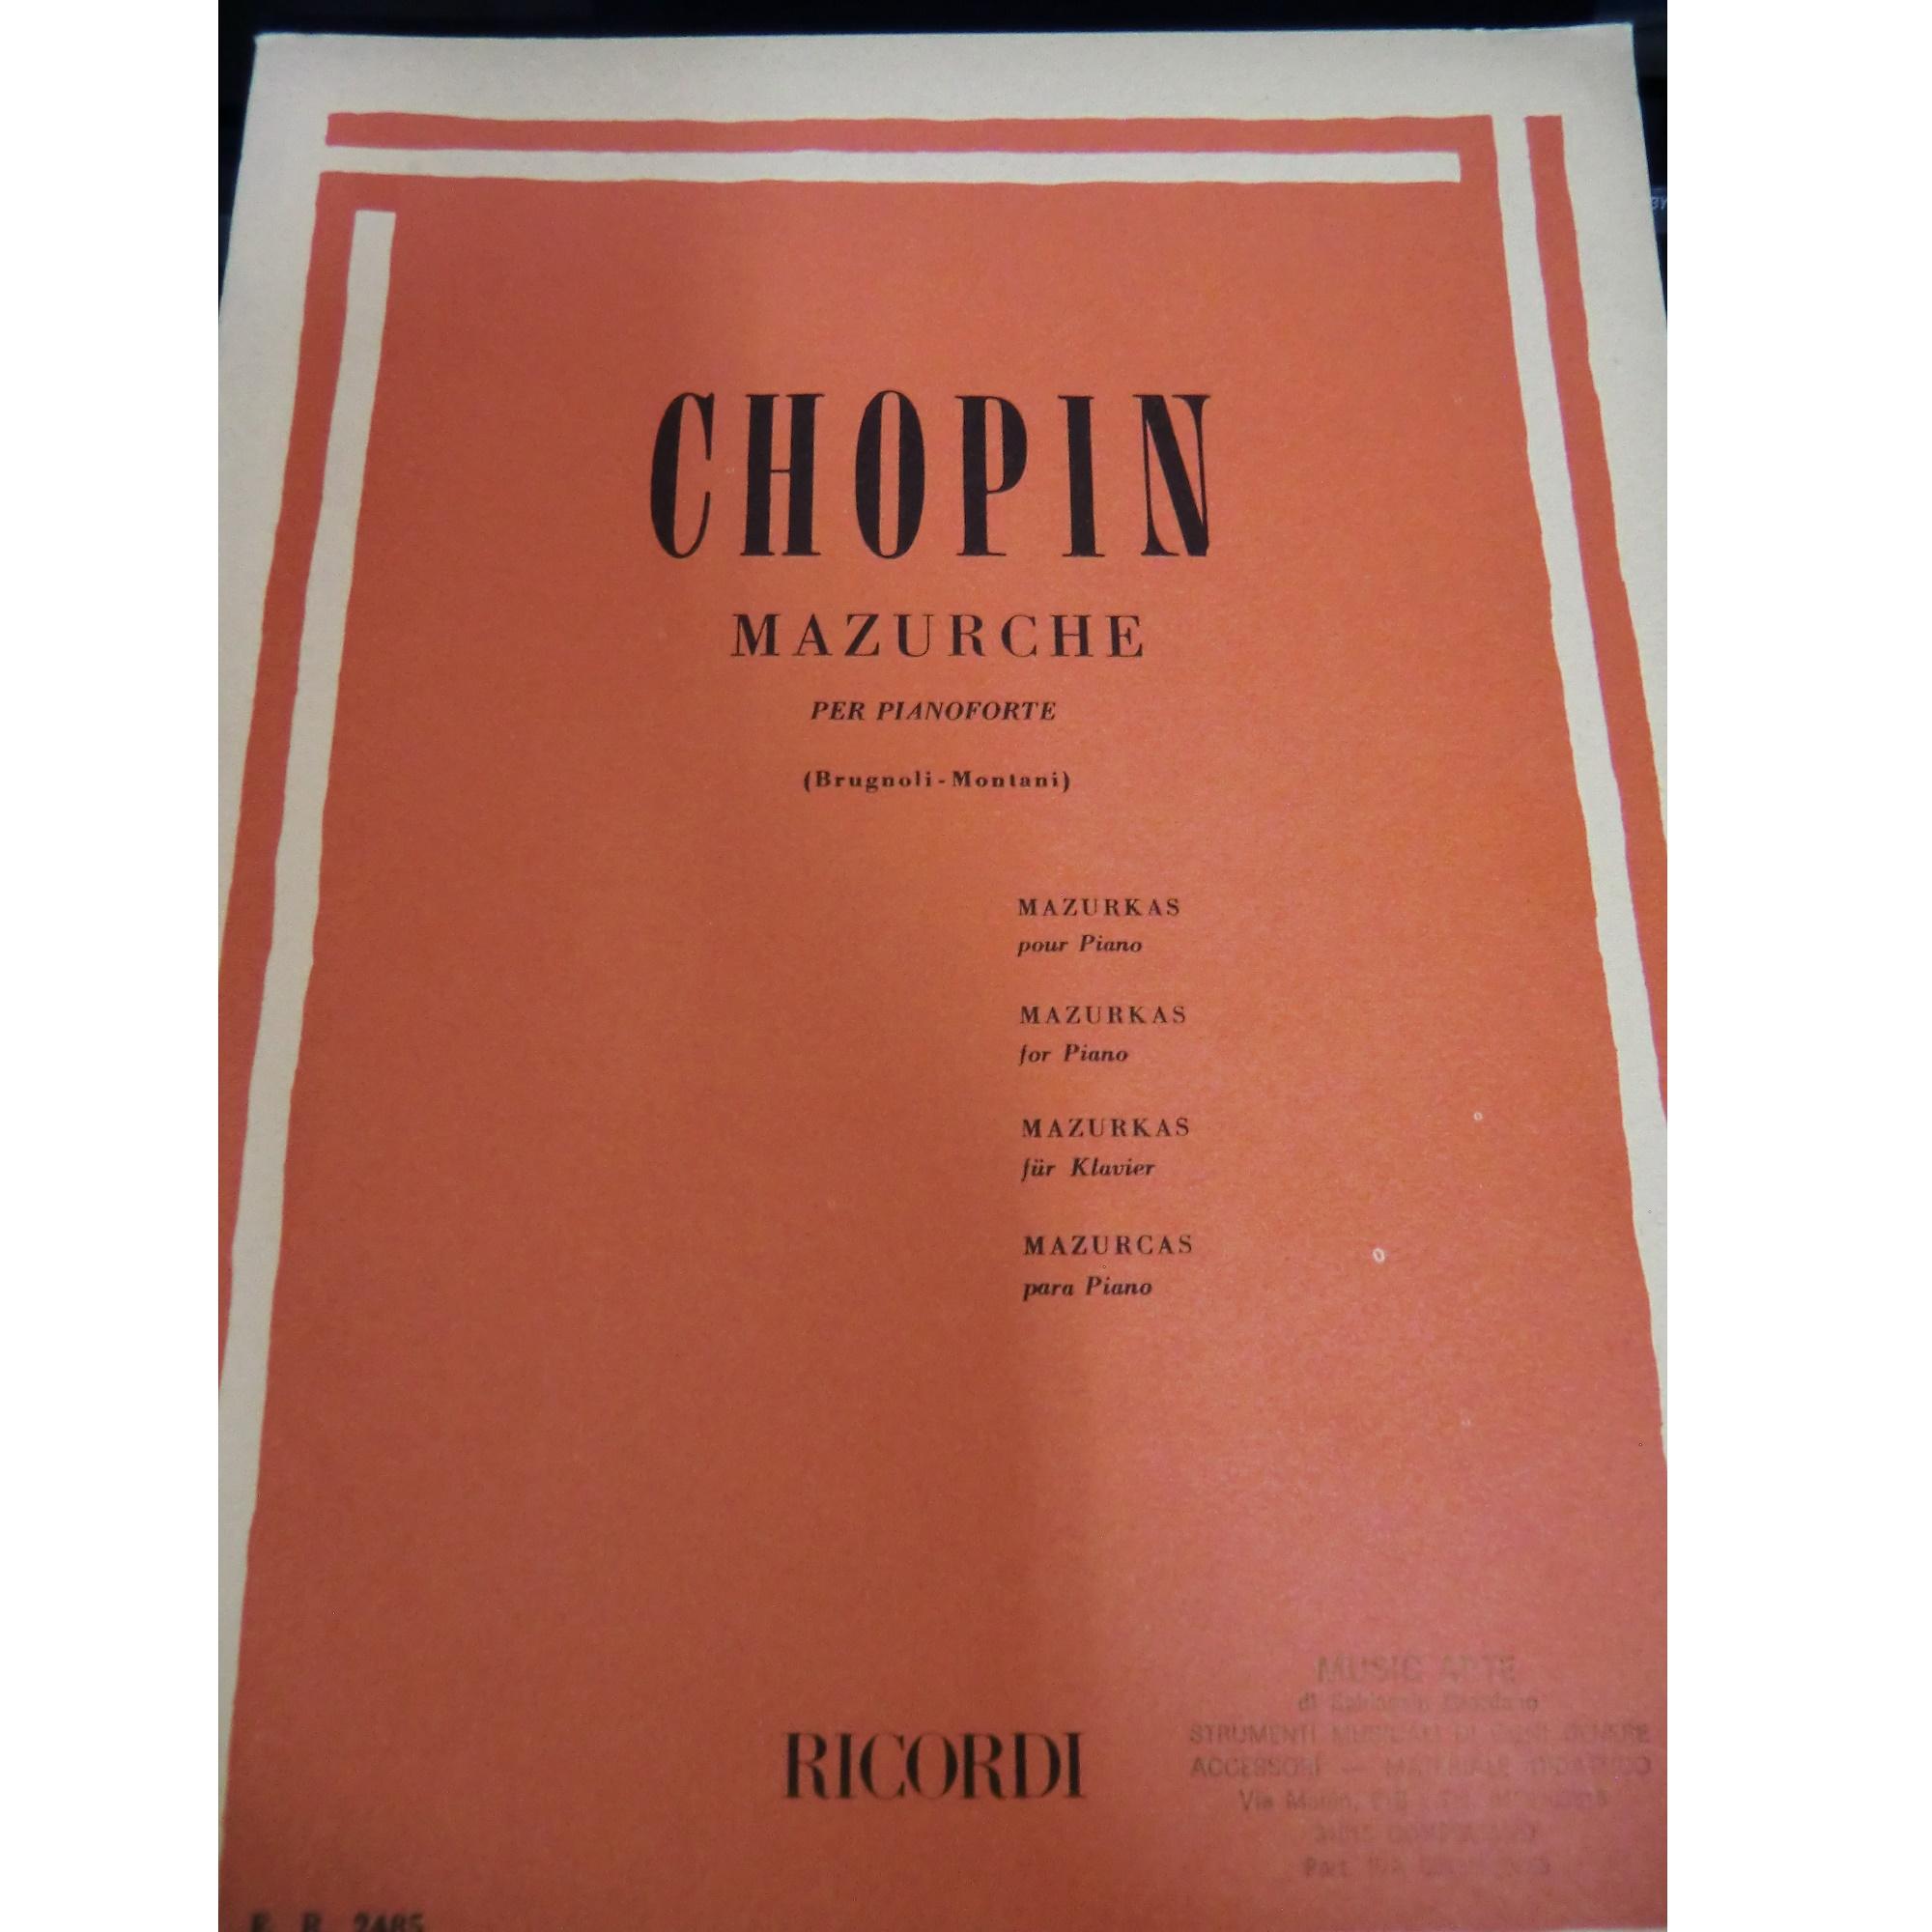 Chopin Mazurche per pianoforte (Brugnoli-Montani) - Ricordi